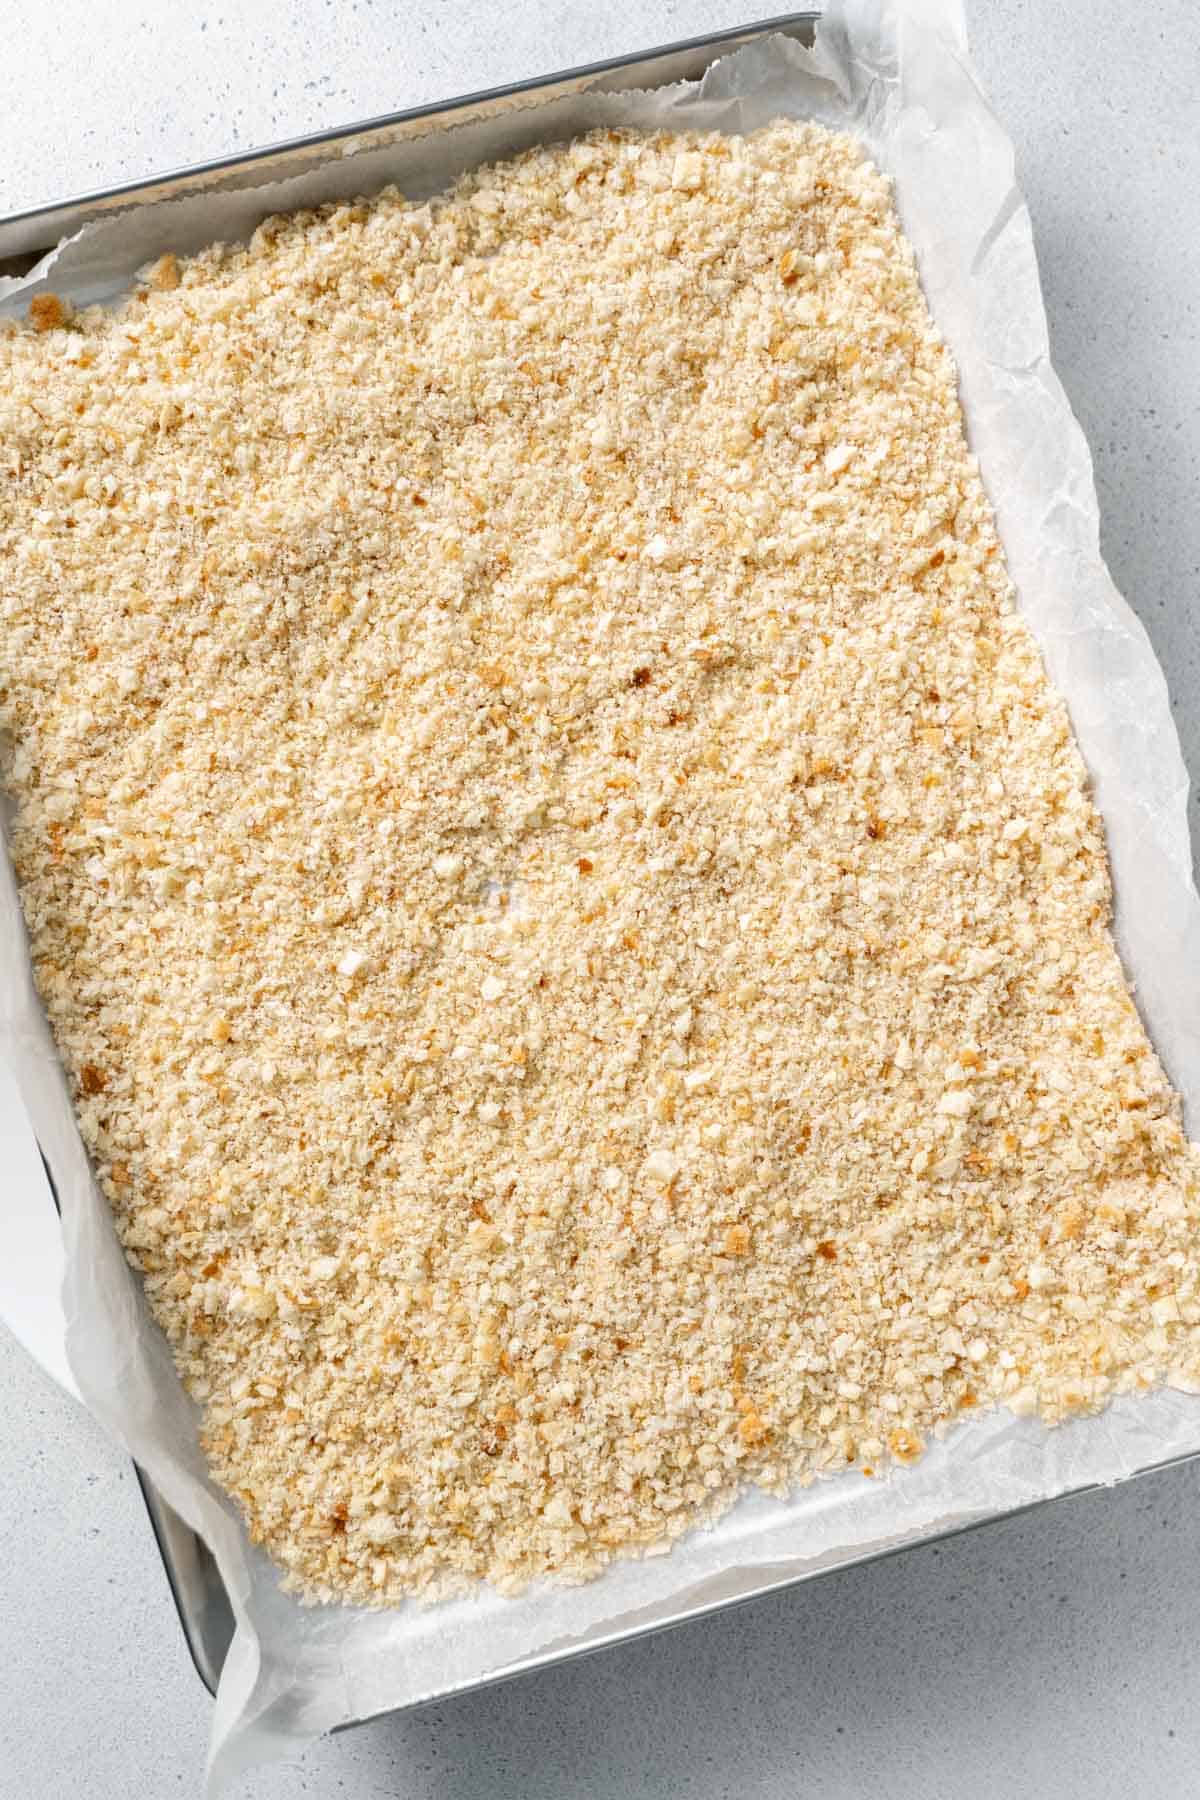 bread crumbs on baking sheet